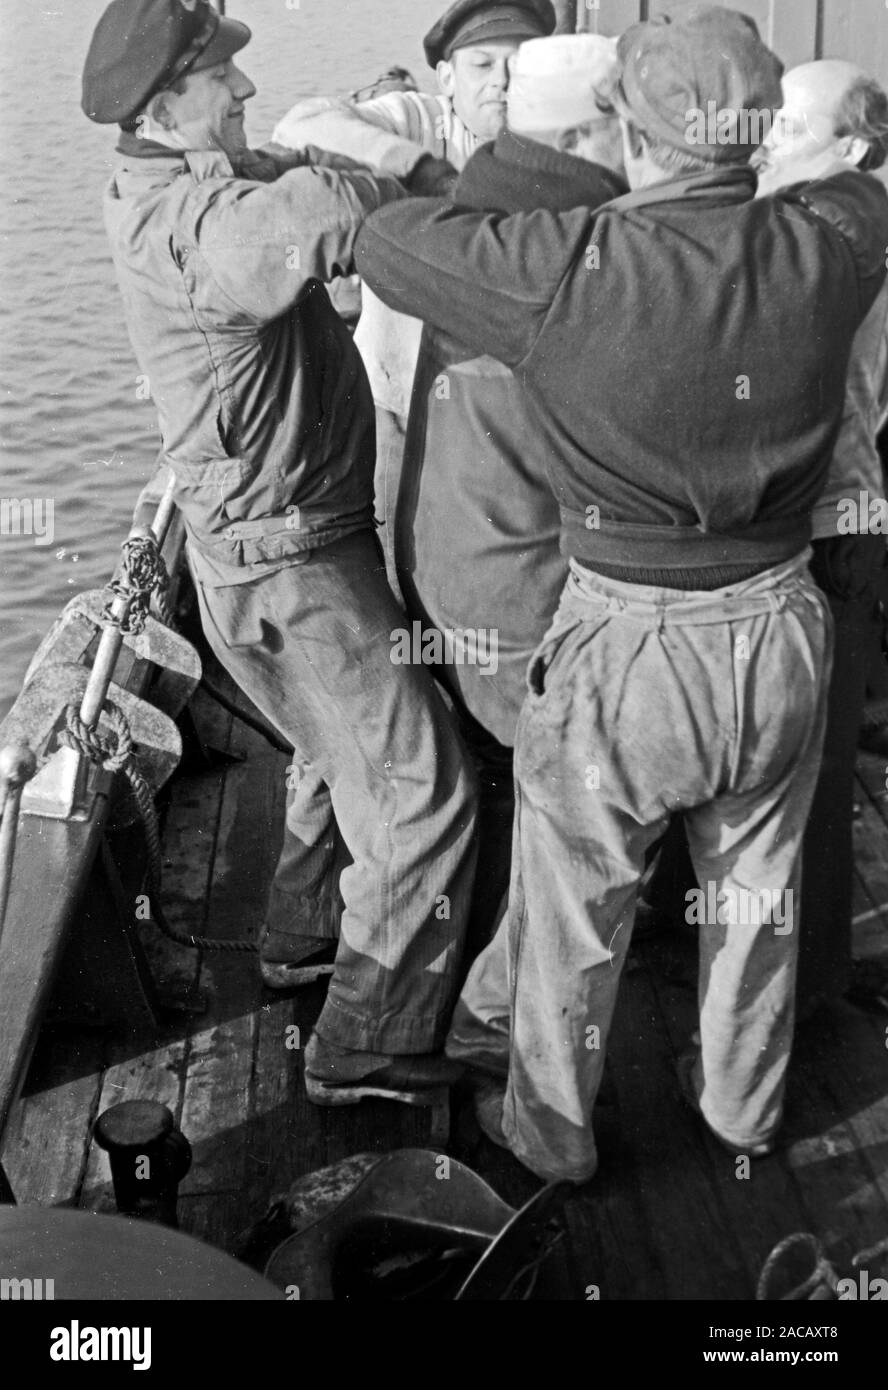 Schiffsarbeiter helfen Bojen Taucher in Taucheranzug, Emden, Niedersachsen, Deutschland, 1950. Ship workers help buoys divers in diving suit, Emden, Lower Saxony, Germany, 1950s. Stock Photo